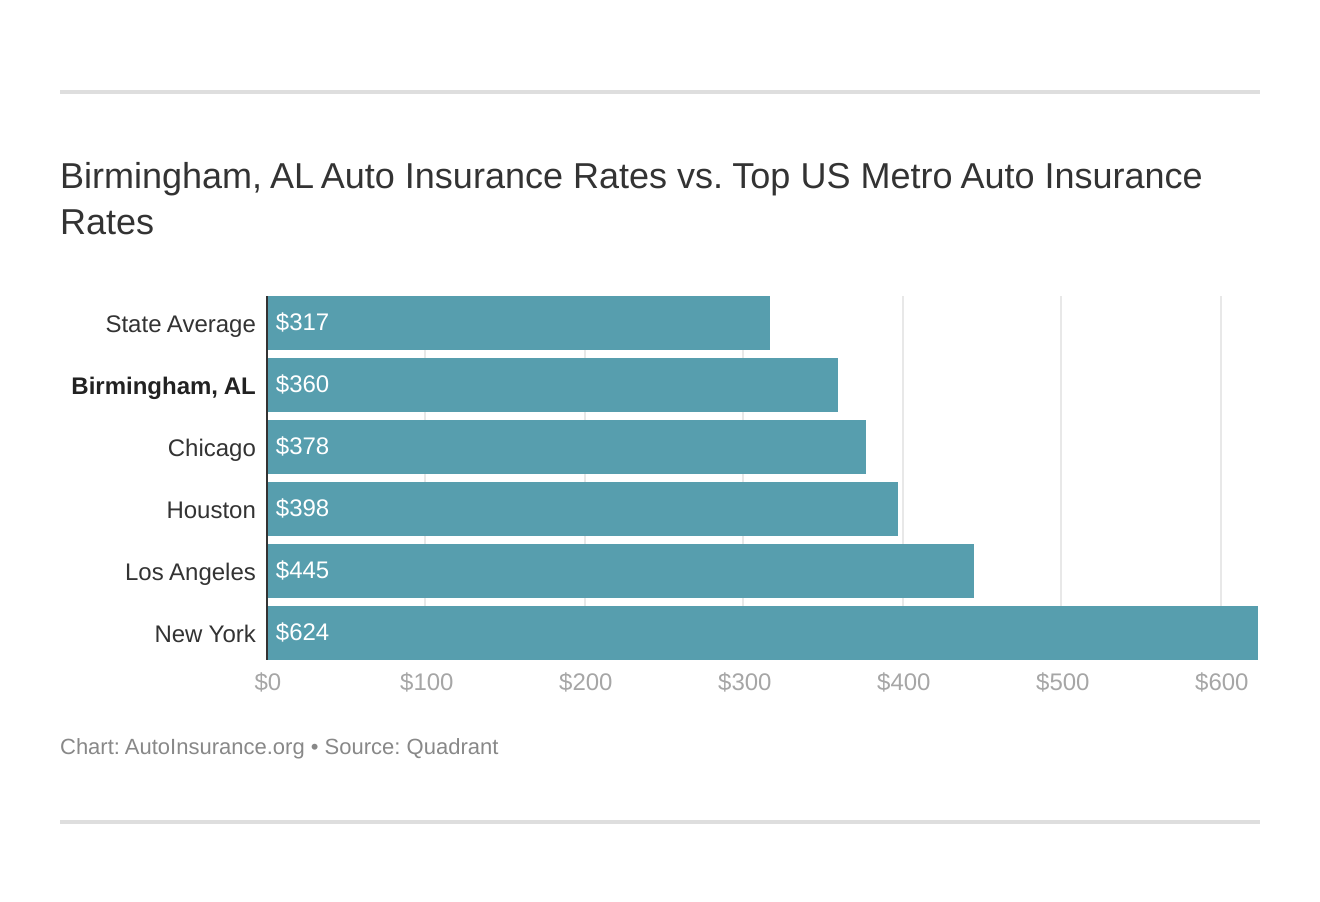 Birmingham, AL Auto Insurance Rates vs. Top US Metro Auto Insurance Rates